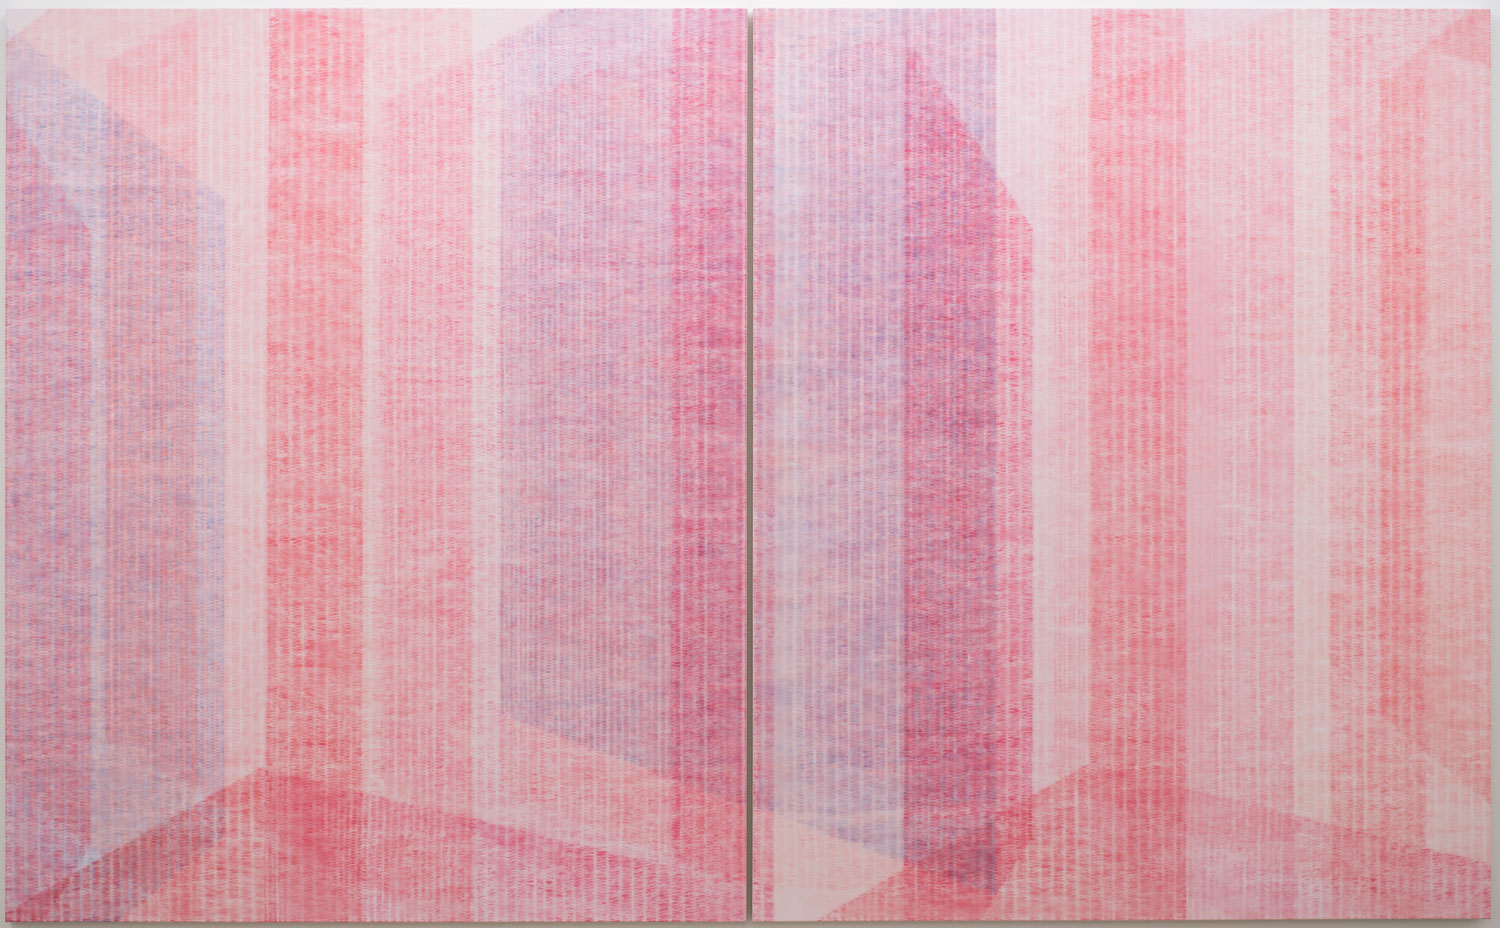 Marie-Claire Blais, Être la porte qui s’ouvre 10, 2017, Acrylic on canvas, 203 x 330 cm, Courtesy of the artist and Galerie René Blouin